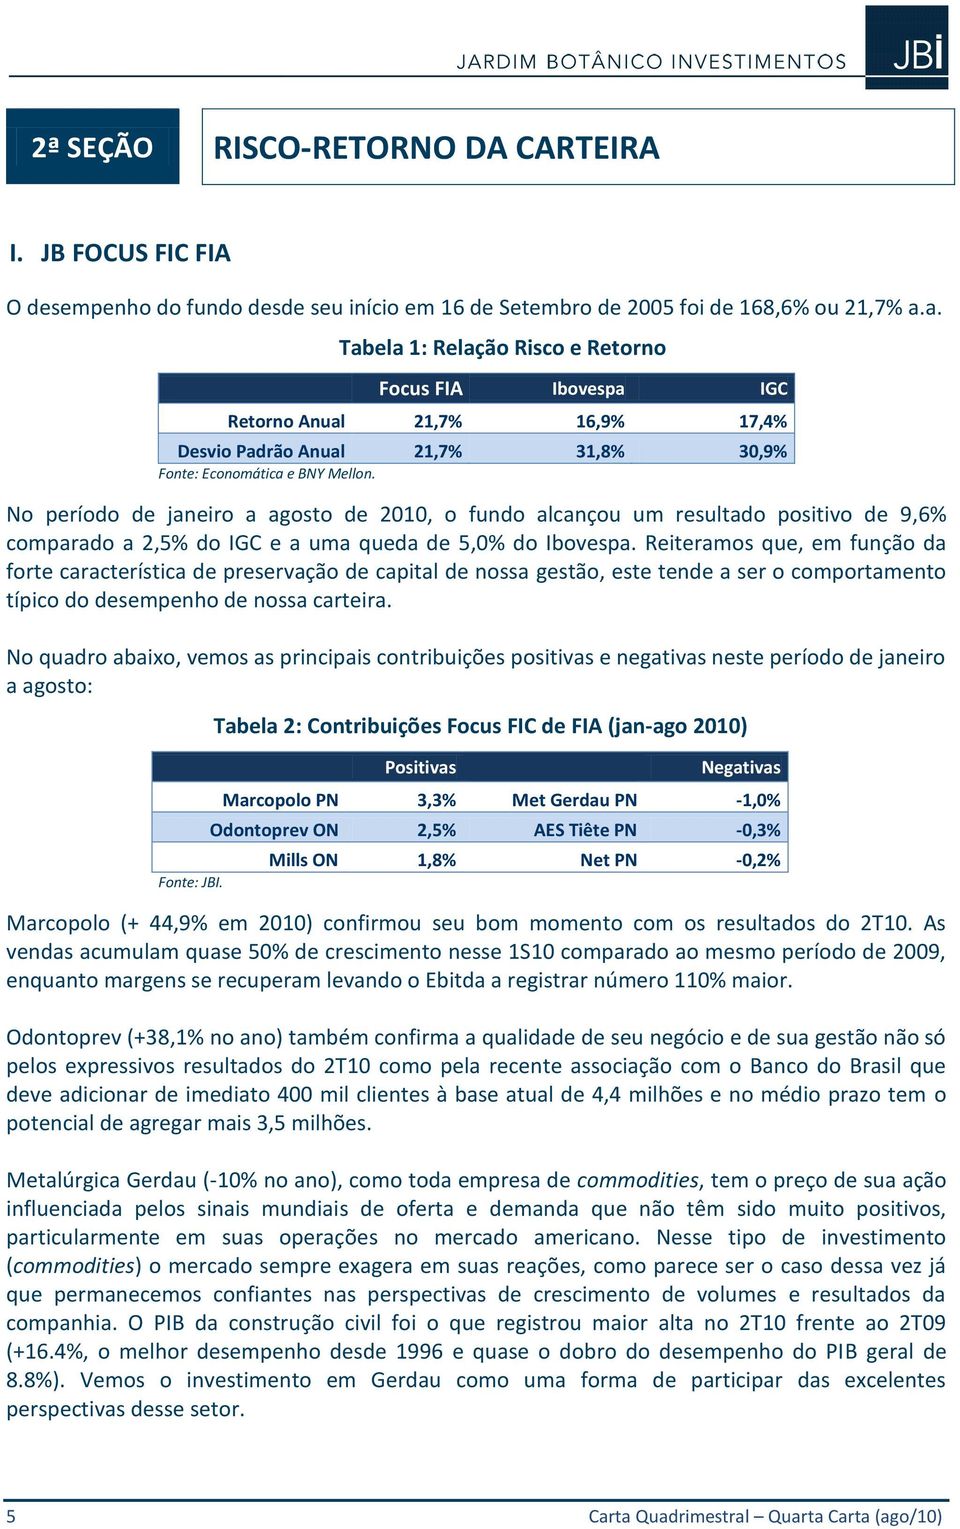 No período de janeiro a agosto de 2010, o fundo alcançou um resultado positivo de 9,6% comparado a 2,5% do IGC e a uma queda de 5,0% do Ibovespa.